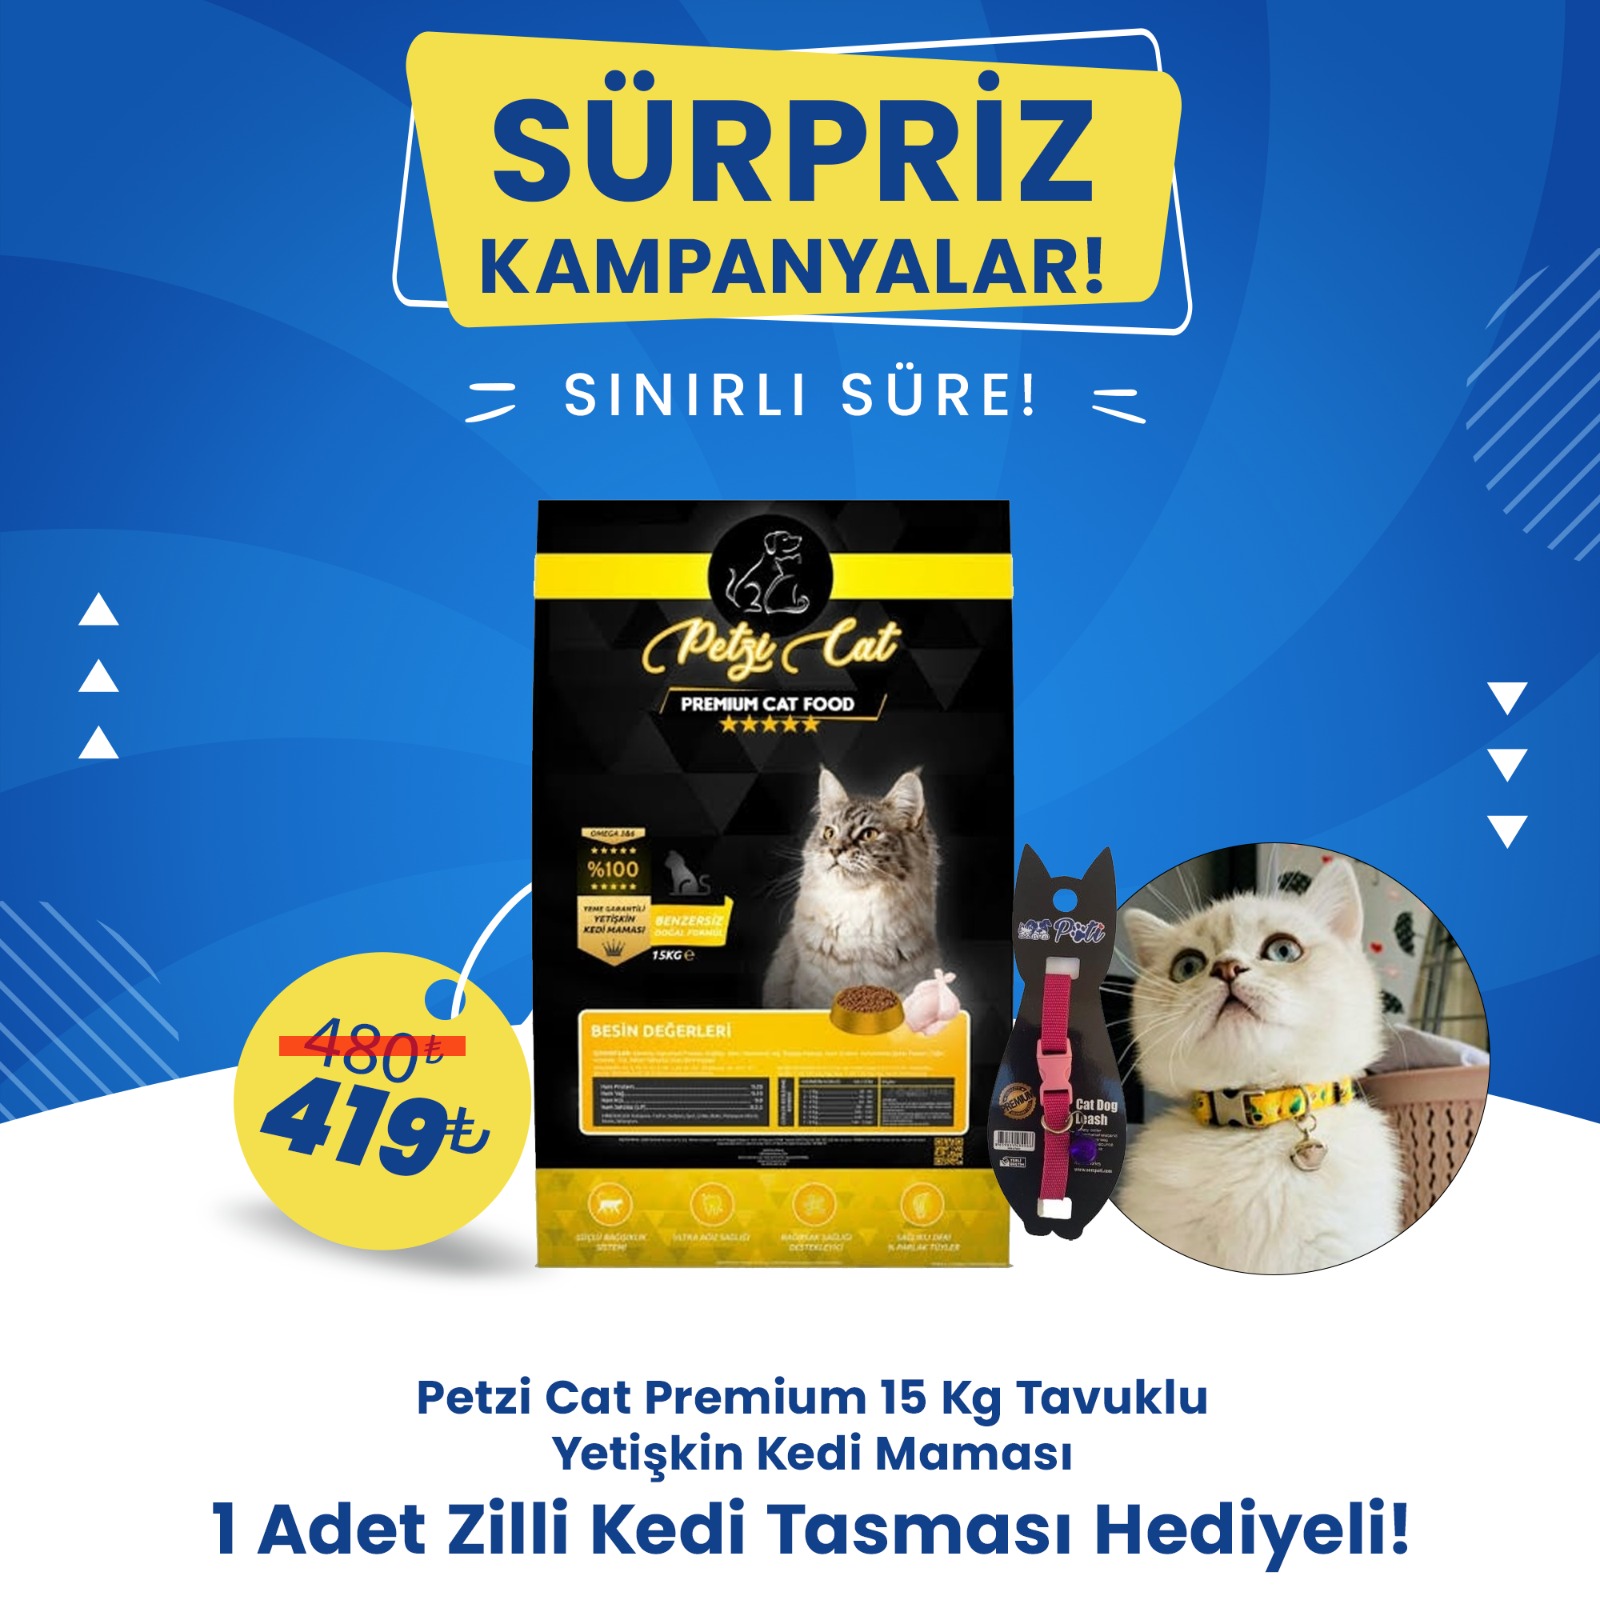 Petzi Cat Premium Tavuklu 15 Kg Yetişkin Kedi Maması + 1 Adet Zilli Kedi Tasması Hediyeli